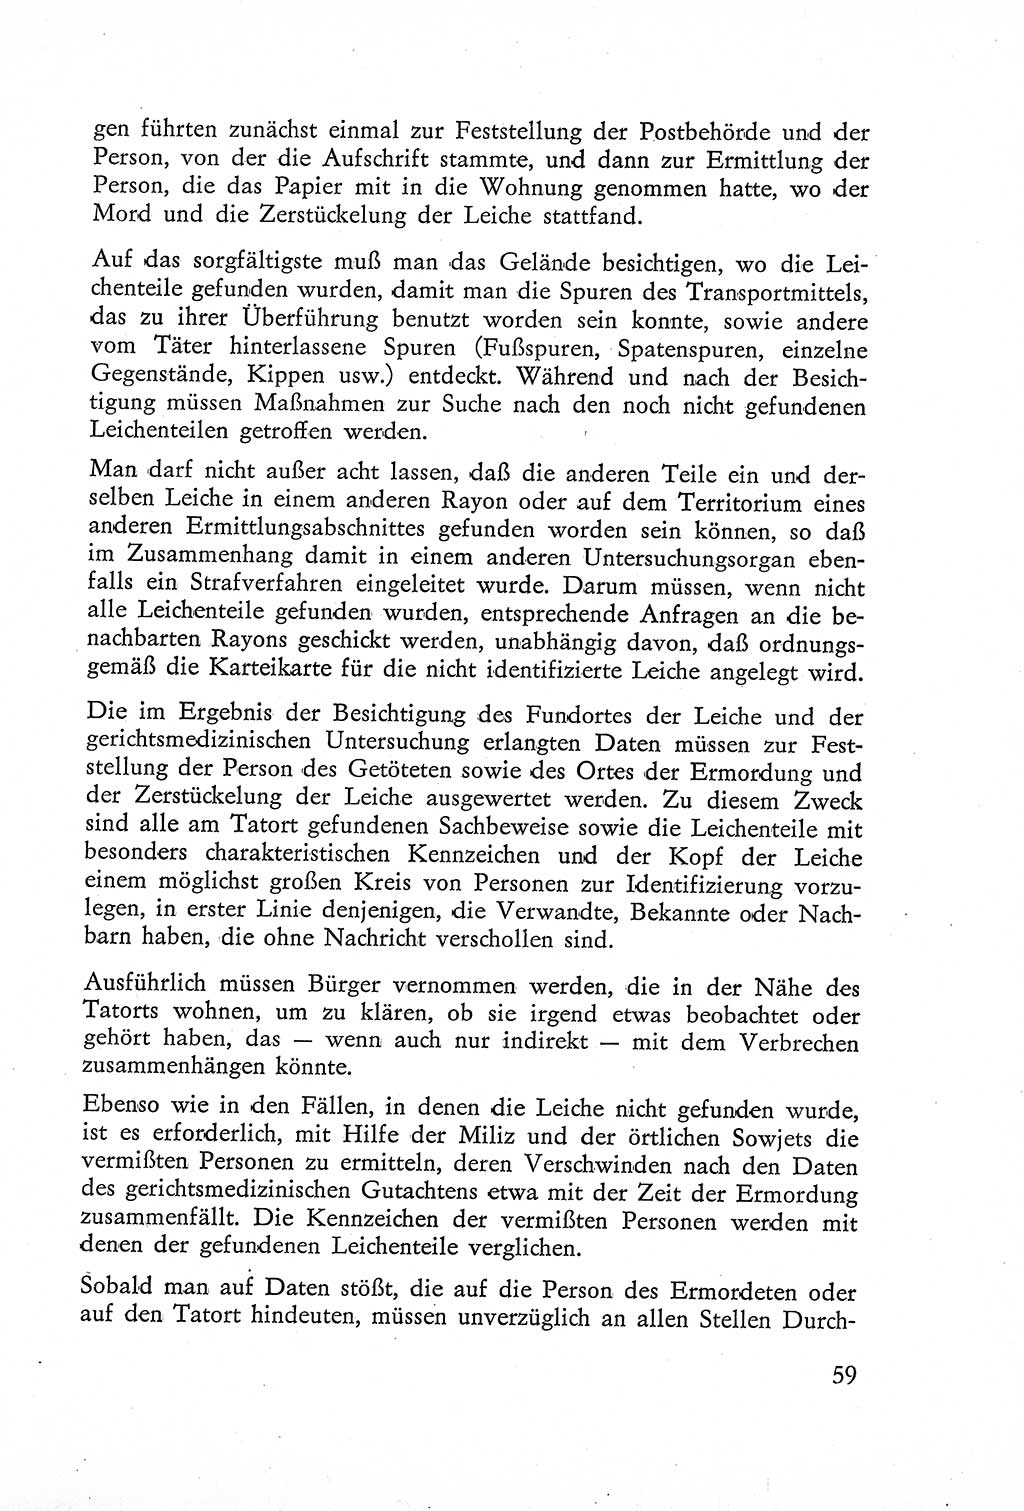 Die Untersuchung einzelner Verbrechensarten [Deutsche Demokratische Republik (DDR)] 1960, Seite 59 (Unters. Verbr.-Art. DDR 1960, S. 59)